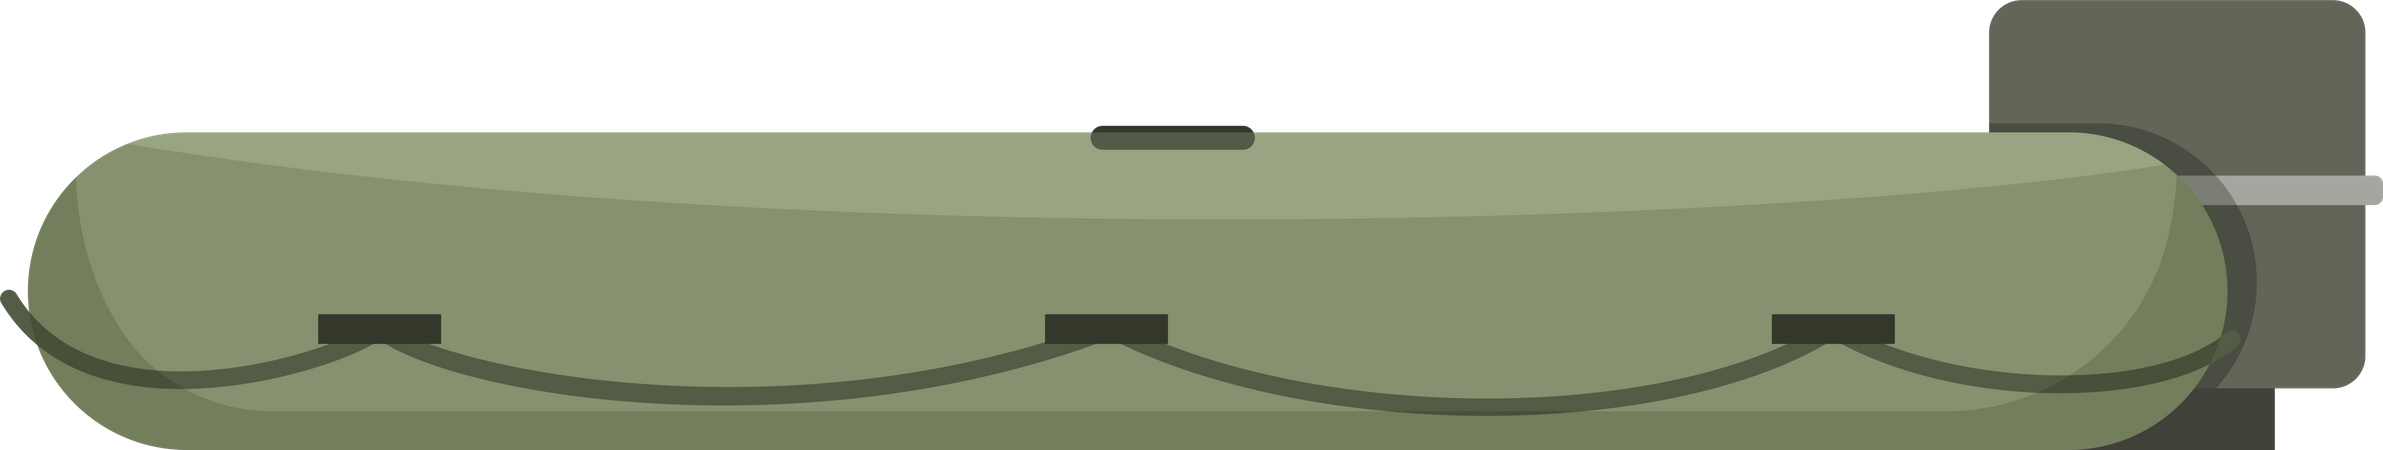 Barco militar  Ilustración